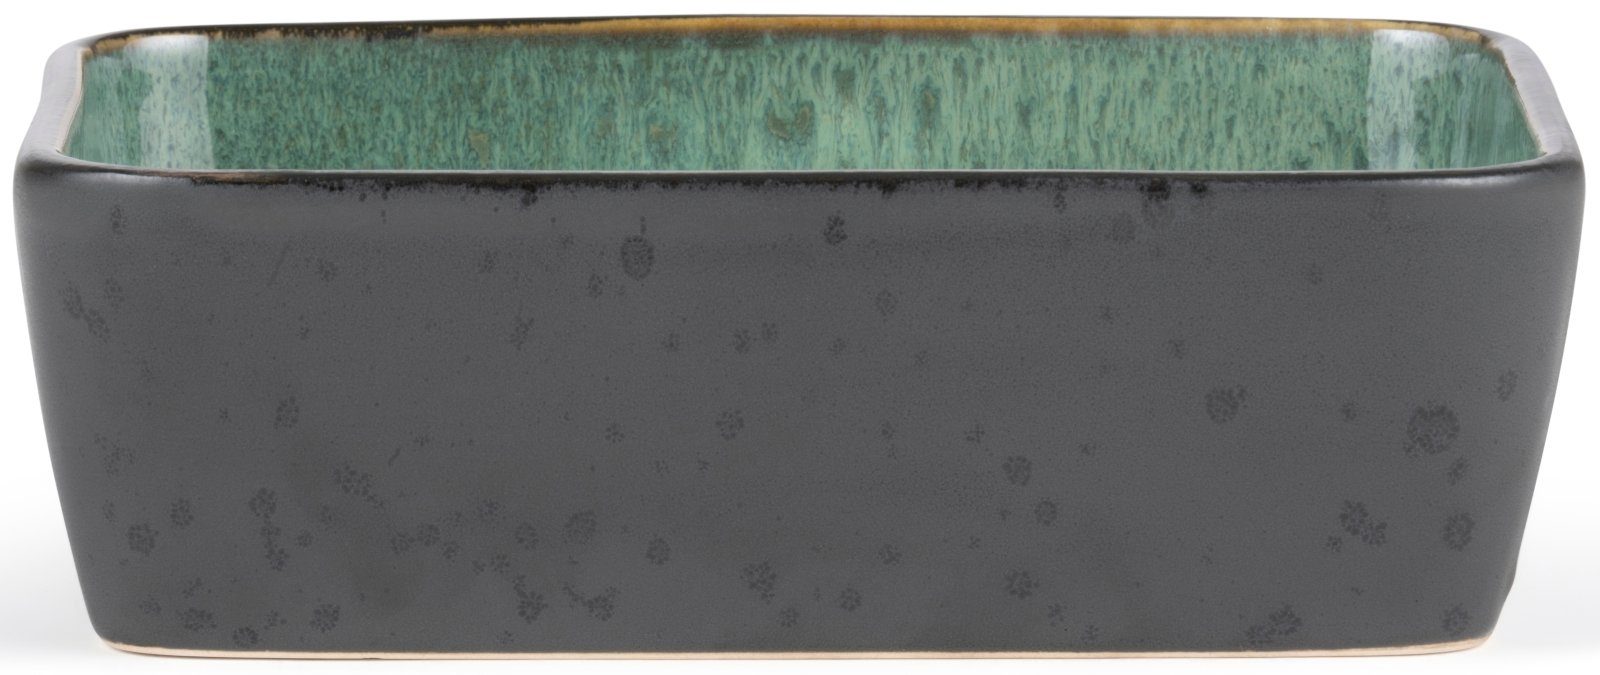 Bitz Auflaufform Auflaufform rechteckig black / green 19 x 14 cm, Steinzeug